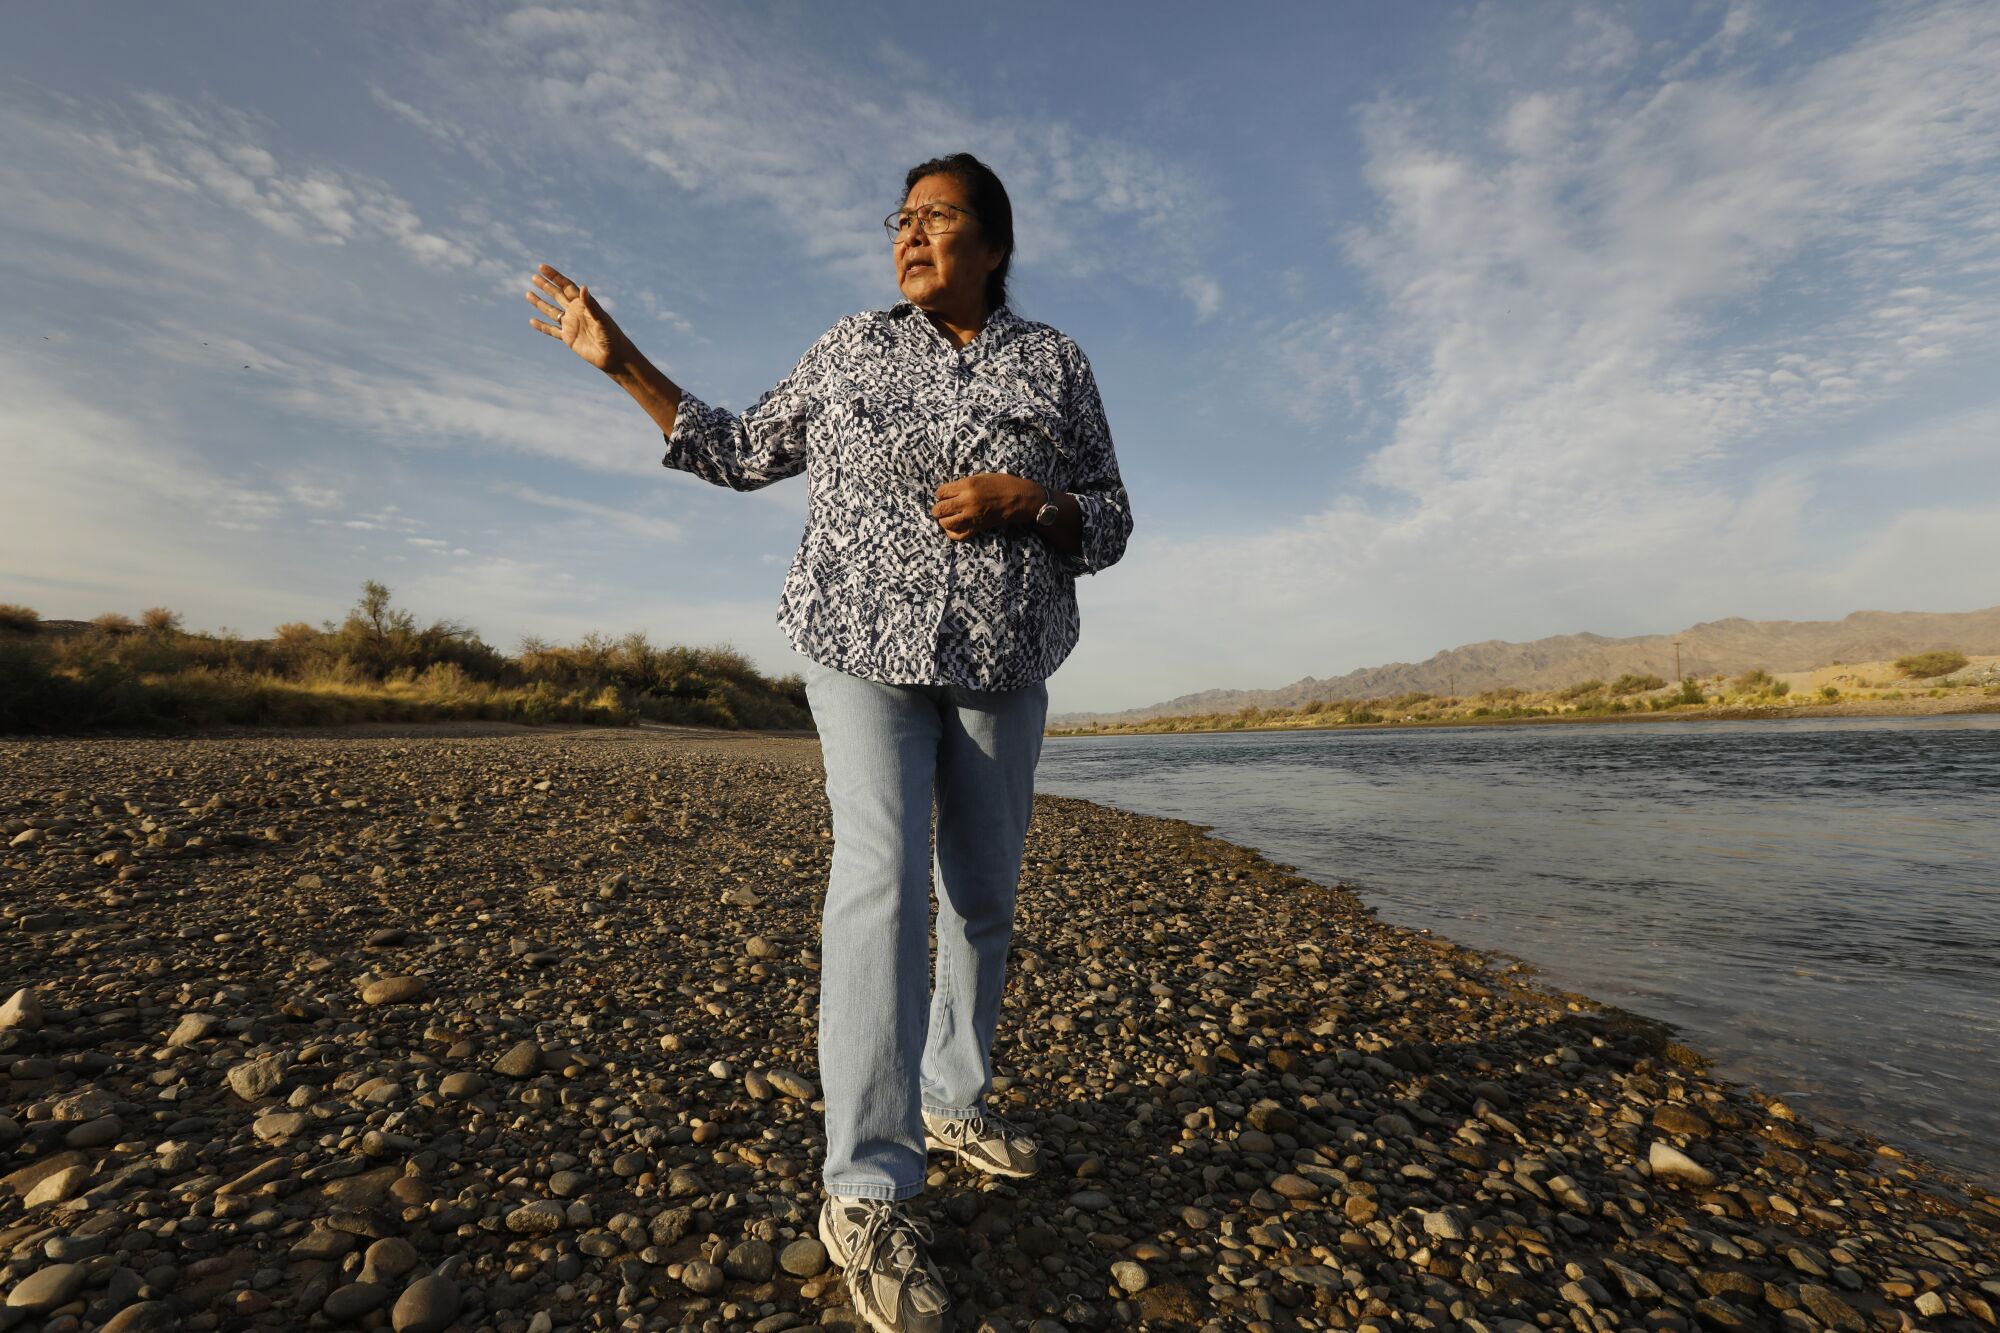 Une femme fait des gestes en parlant et en marchant le long d'une rivière